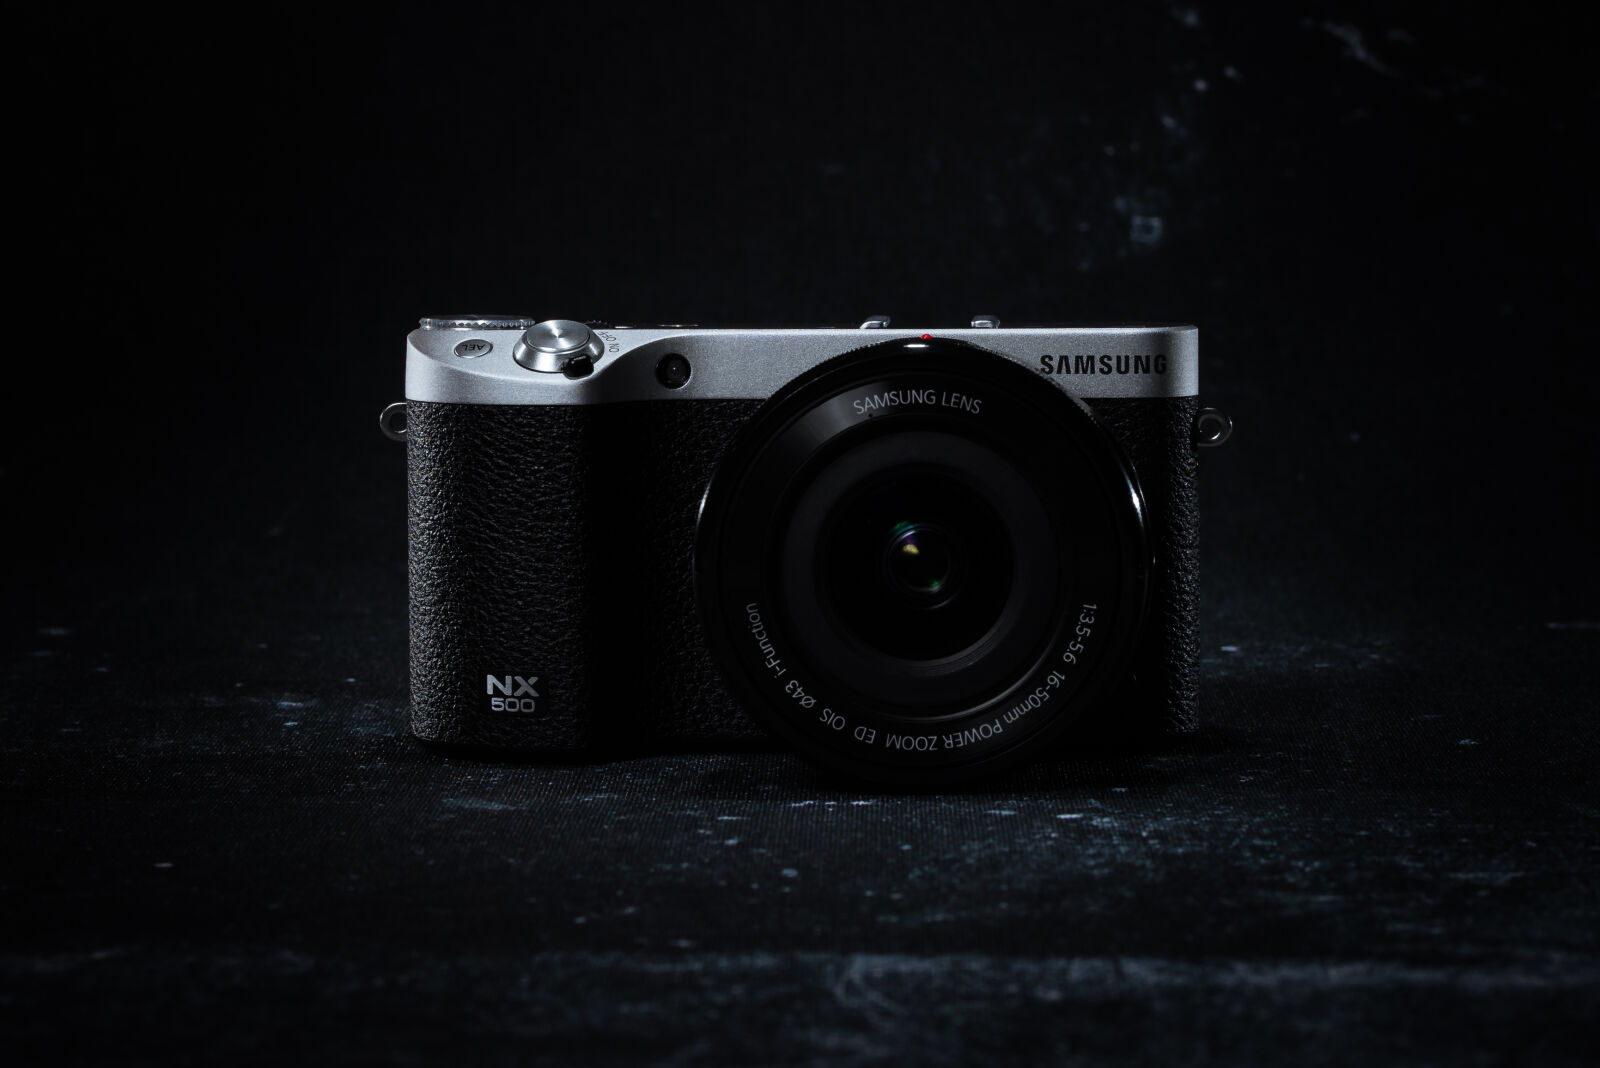 Nikon D800E + Nikon AF-S Nikkor 58mm F1.4G sample photo. Samsung nx500 photography